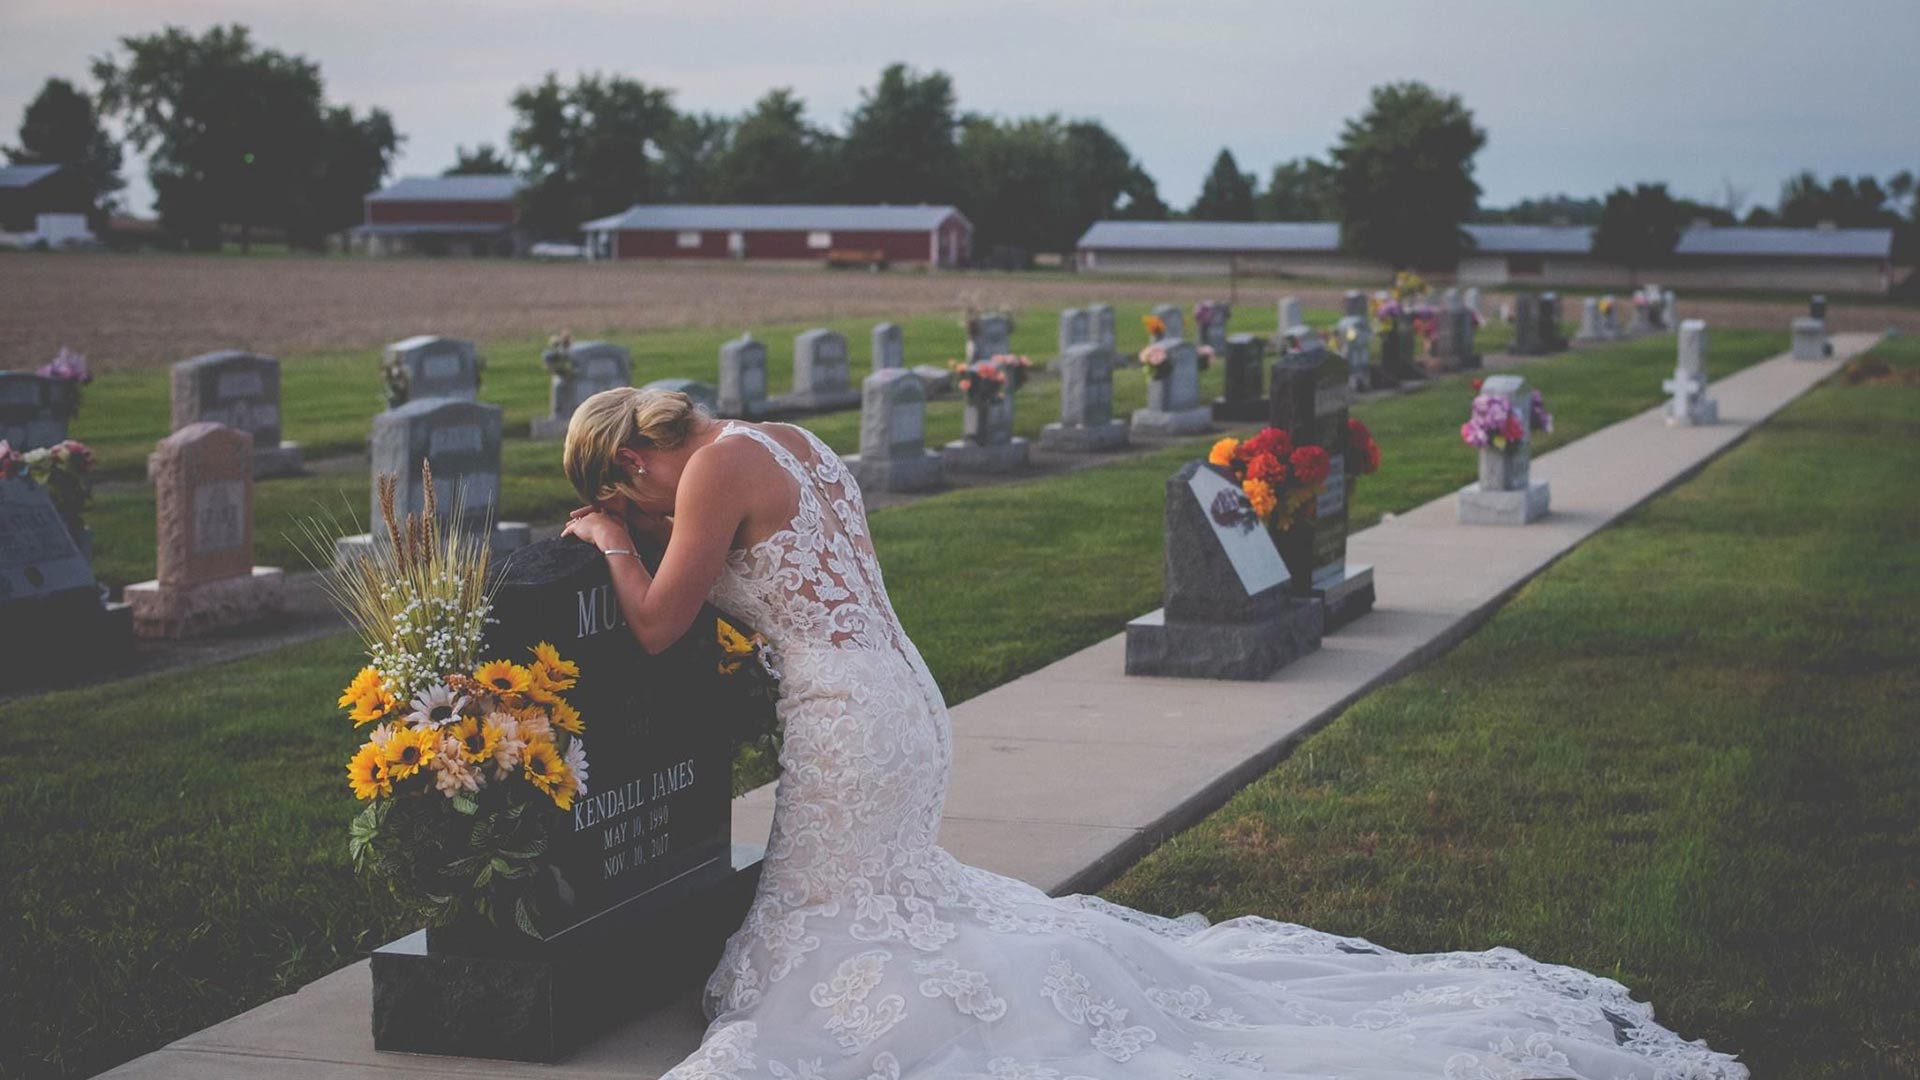 La historia detrás de la foto de una novia en la tumba de su prometido